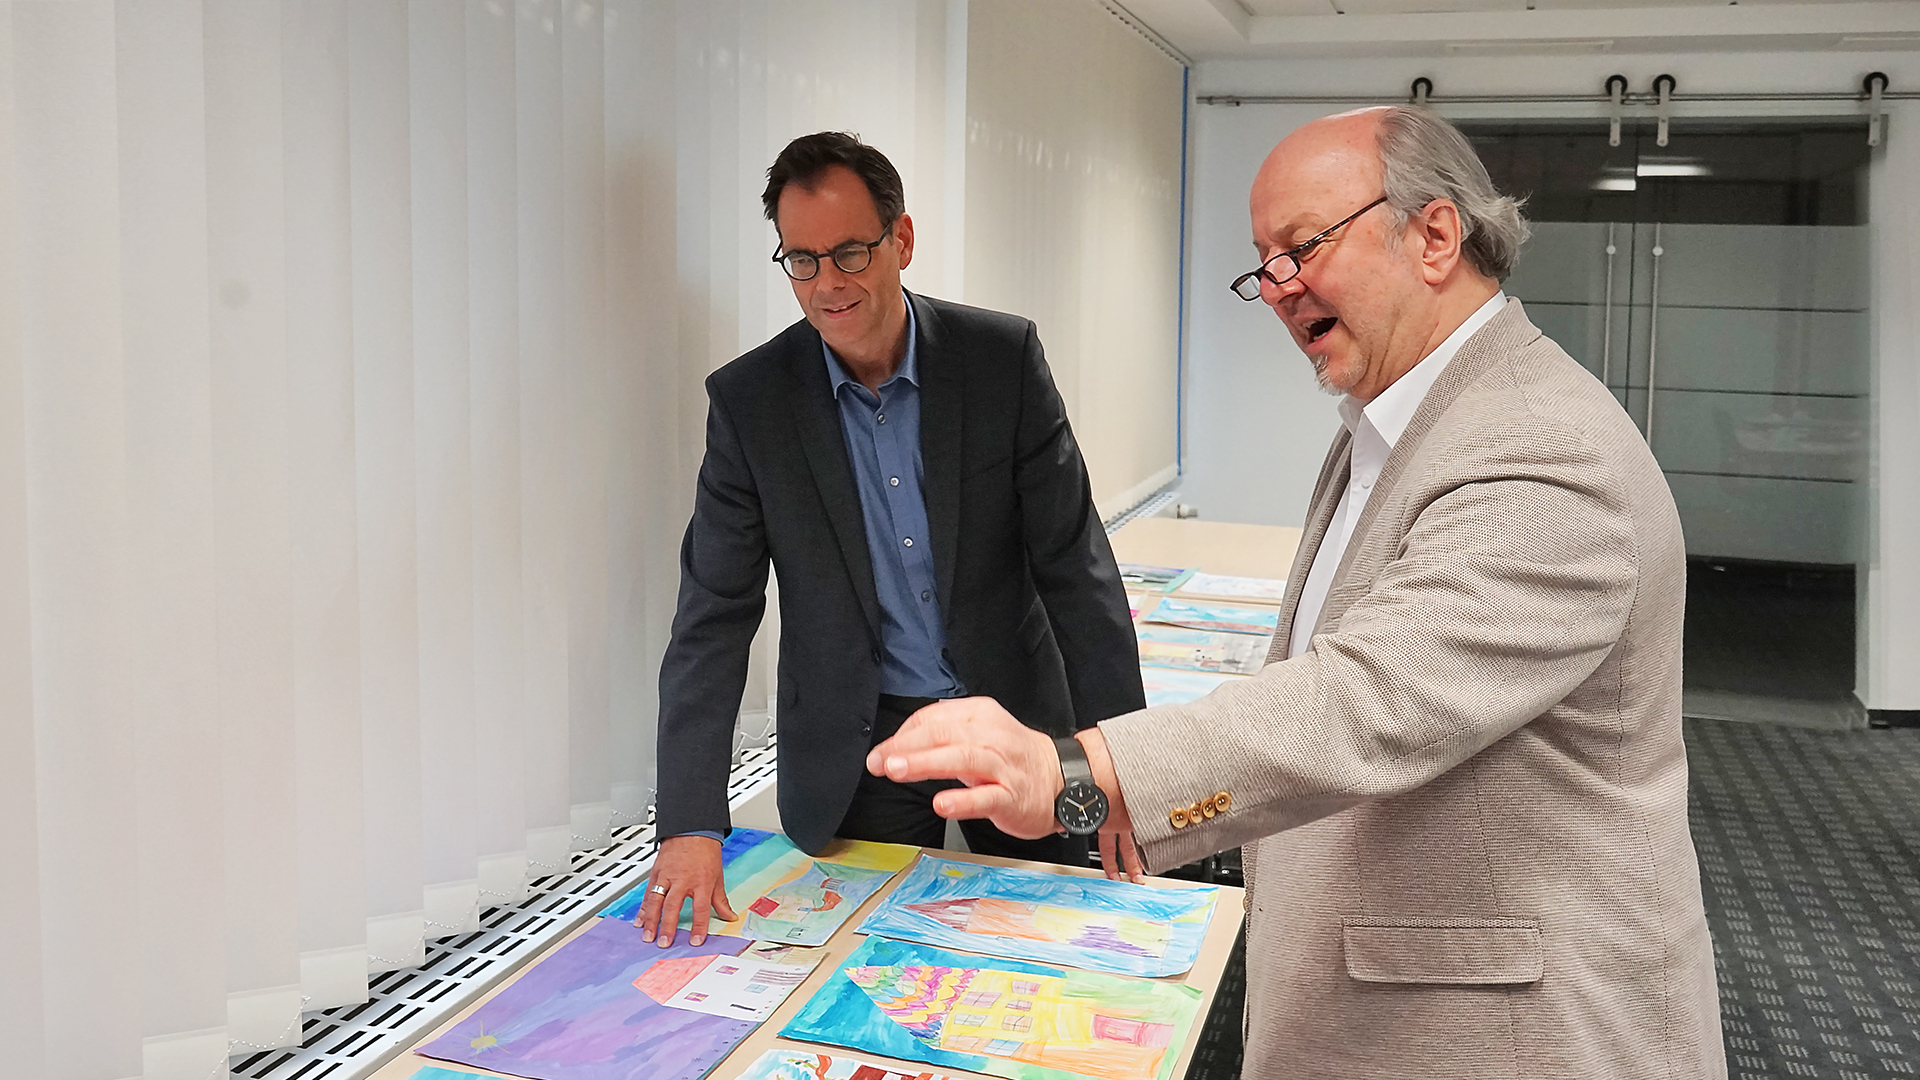 Michael Willemse, Vorstand der Volksbank Viersen, und Uwe Peters, Viersener Künstler und Mitorganisator des Kunstfestivals viersen°openart, bei der Jurierung der eingereichten Arbeiten.